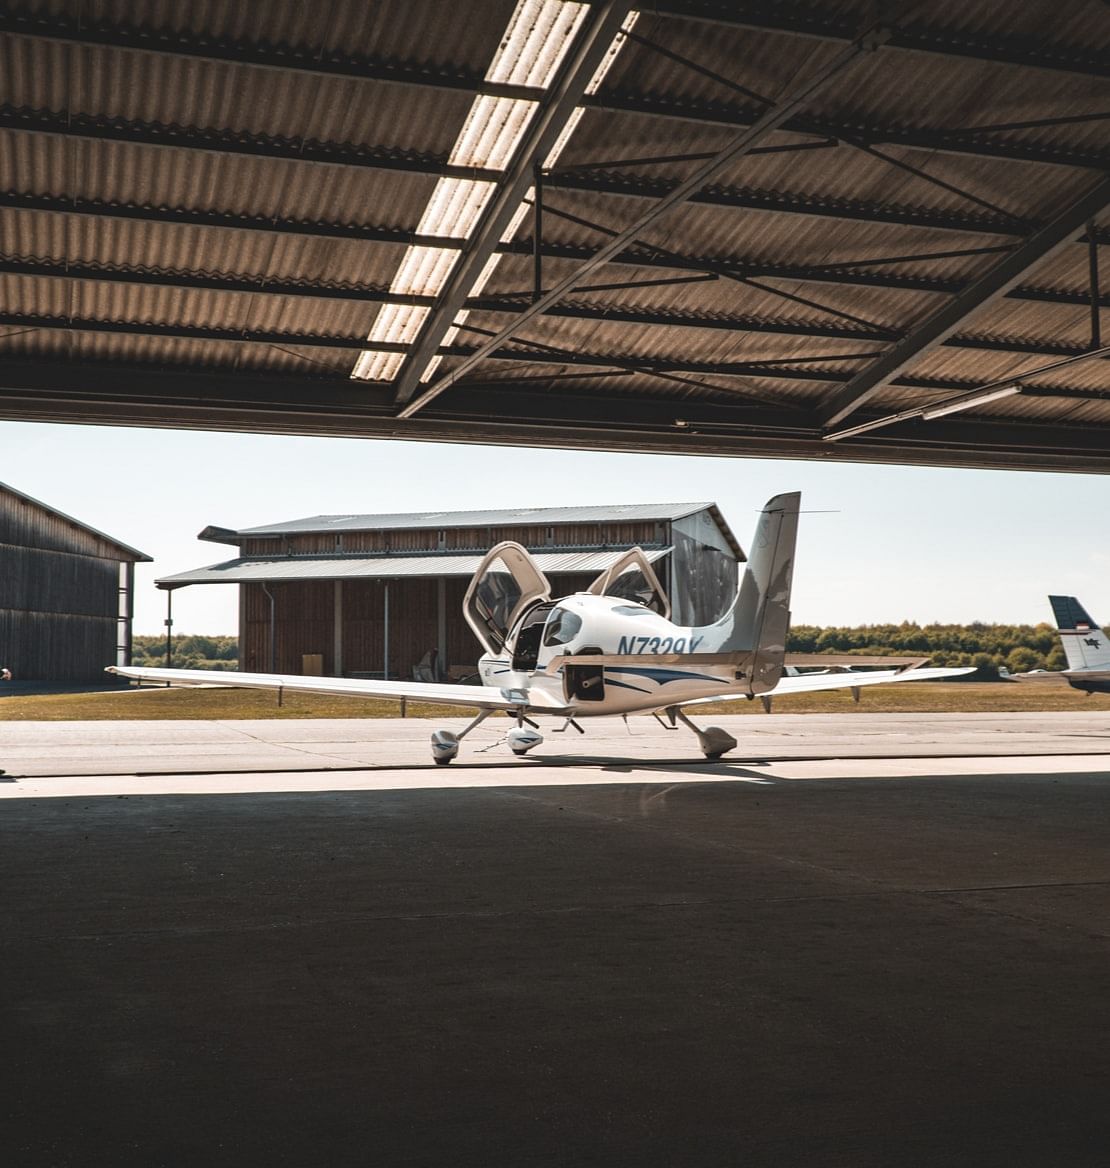 Light aircraft parked in a hangar